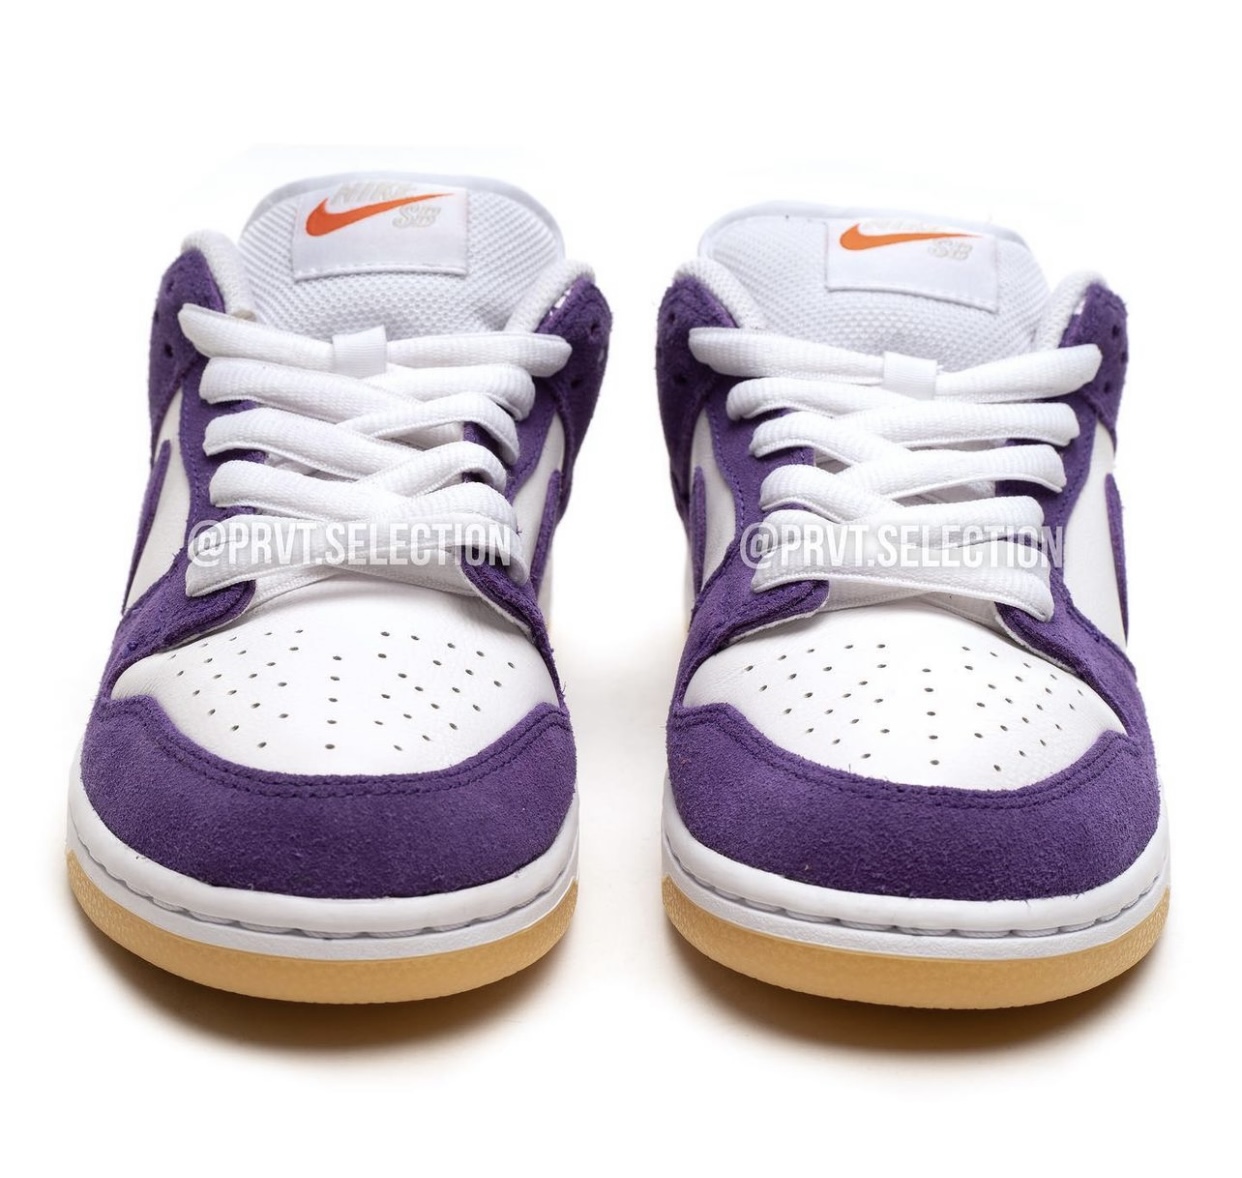 Nike SB Dunk Low Purple Suede DV5464-500 Release Date